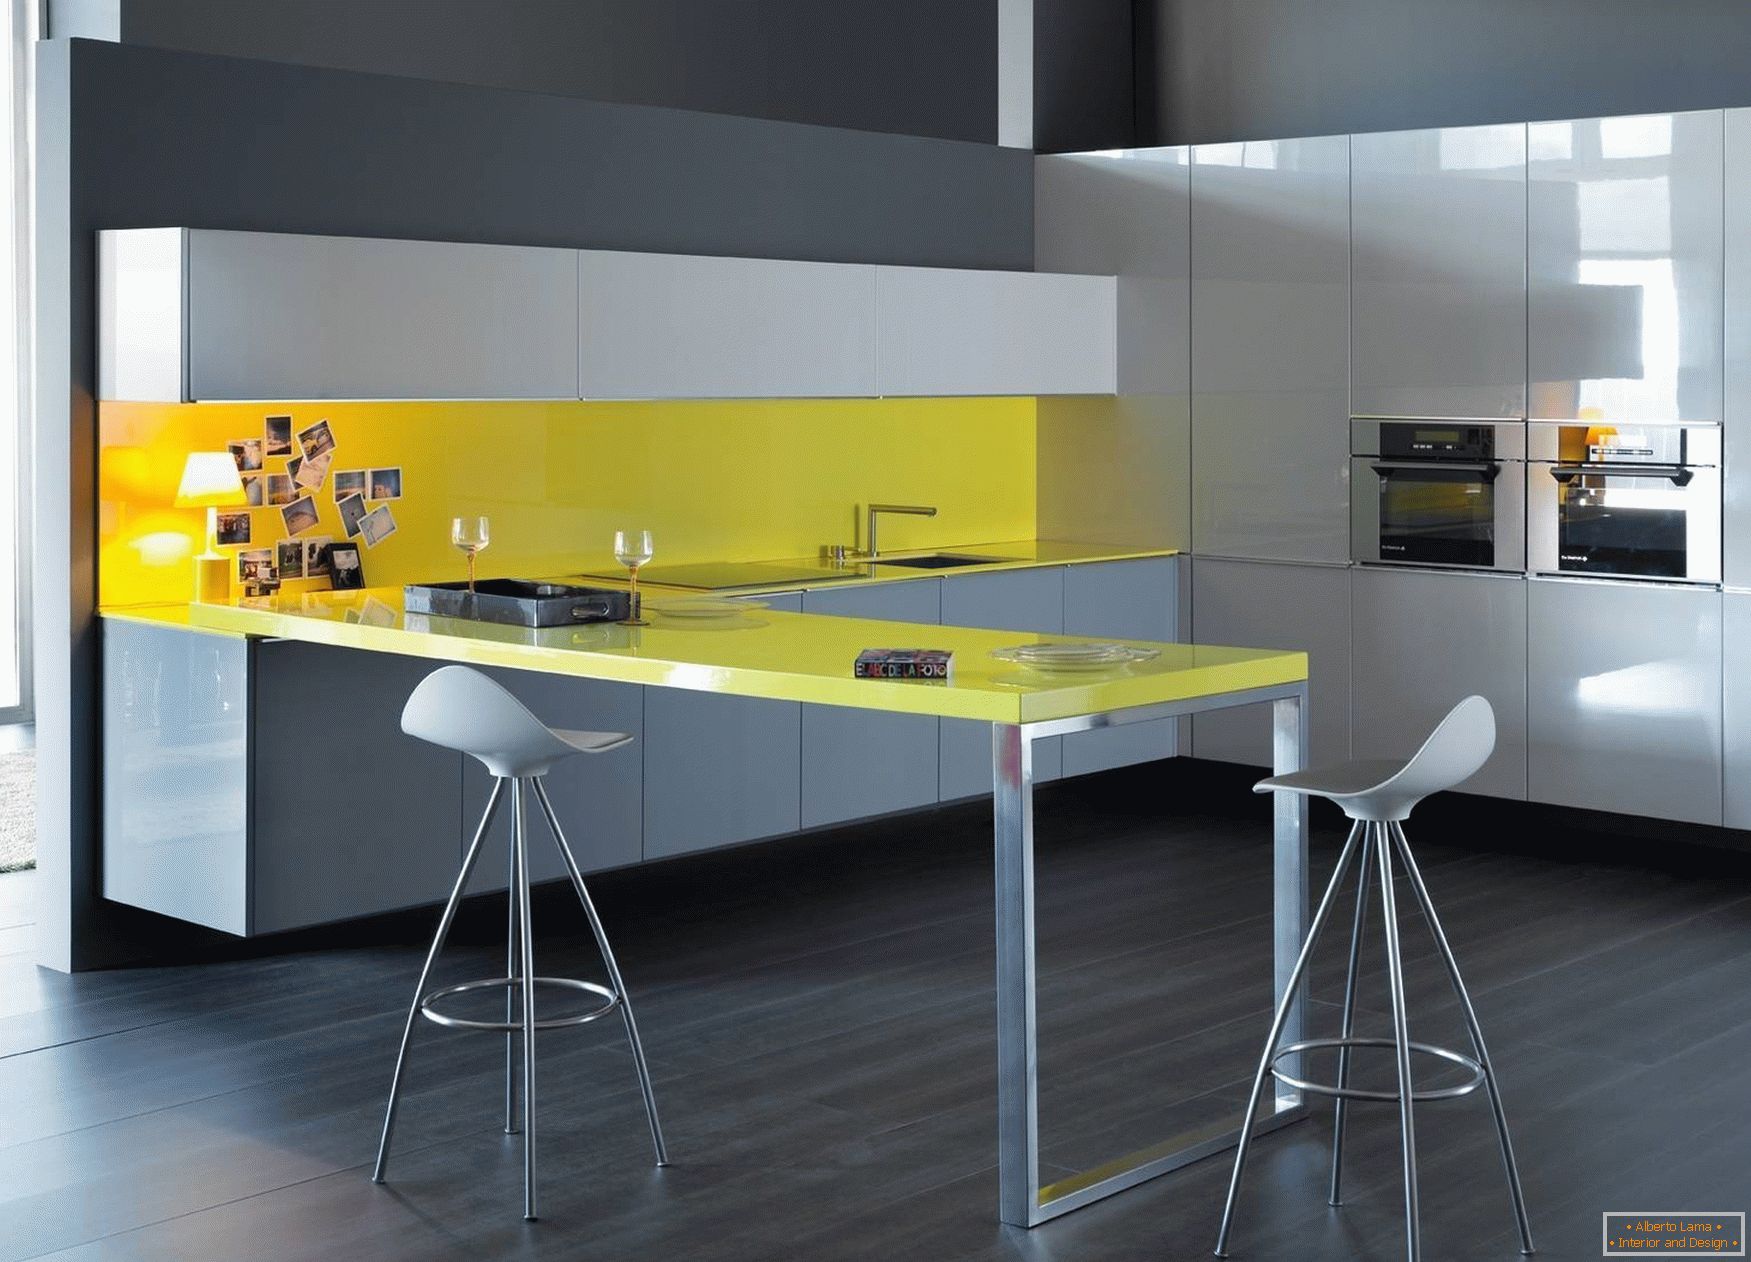 Design de cozinha amarelo-cinza